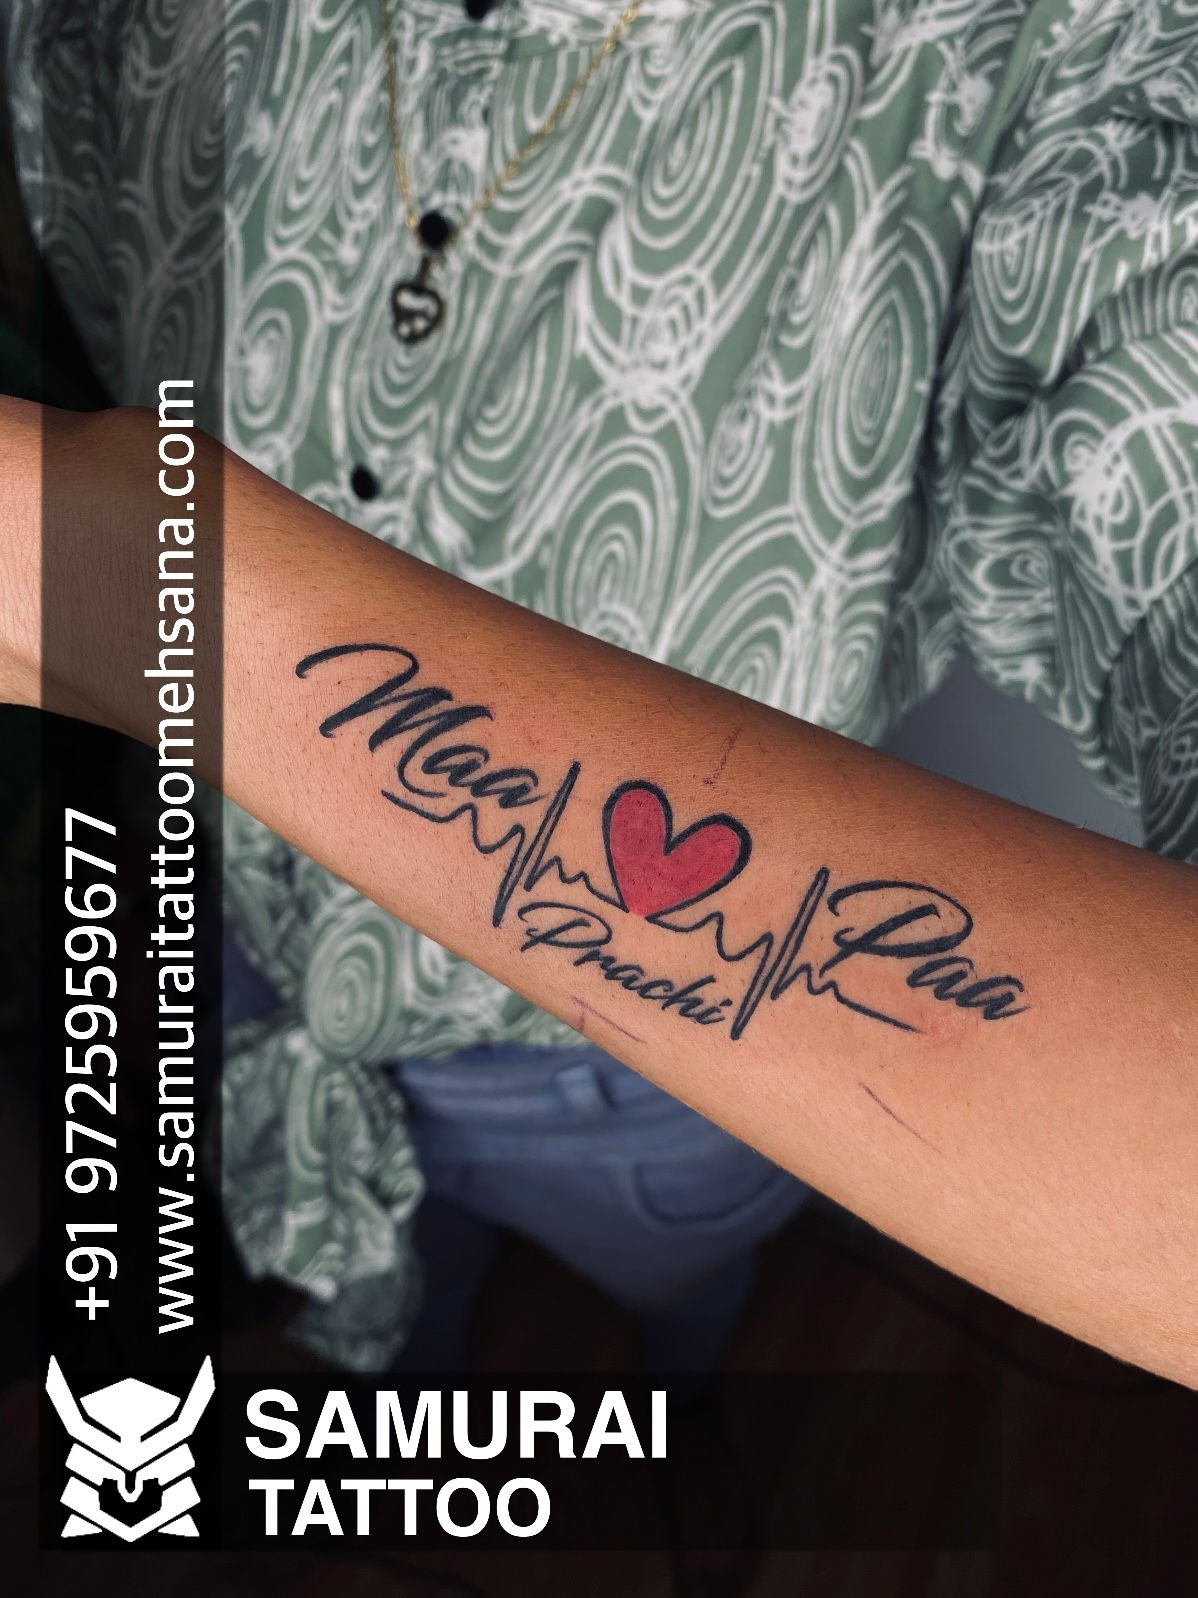 maa paa tattoo maa paa tattoo design maa paa on wrist by anurag chouhan @ tattoo nasha | Tattoos for guys, Wrist tattoos girls, Tattoos for women